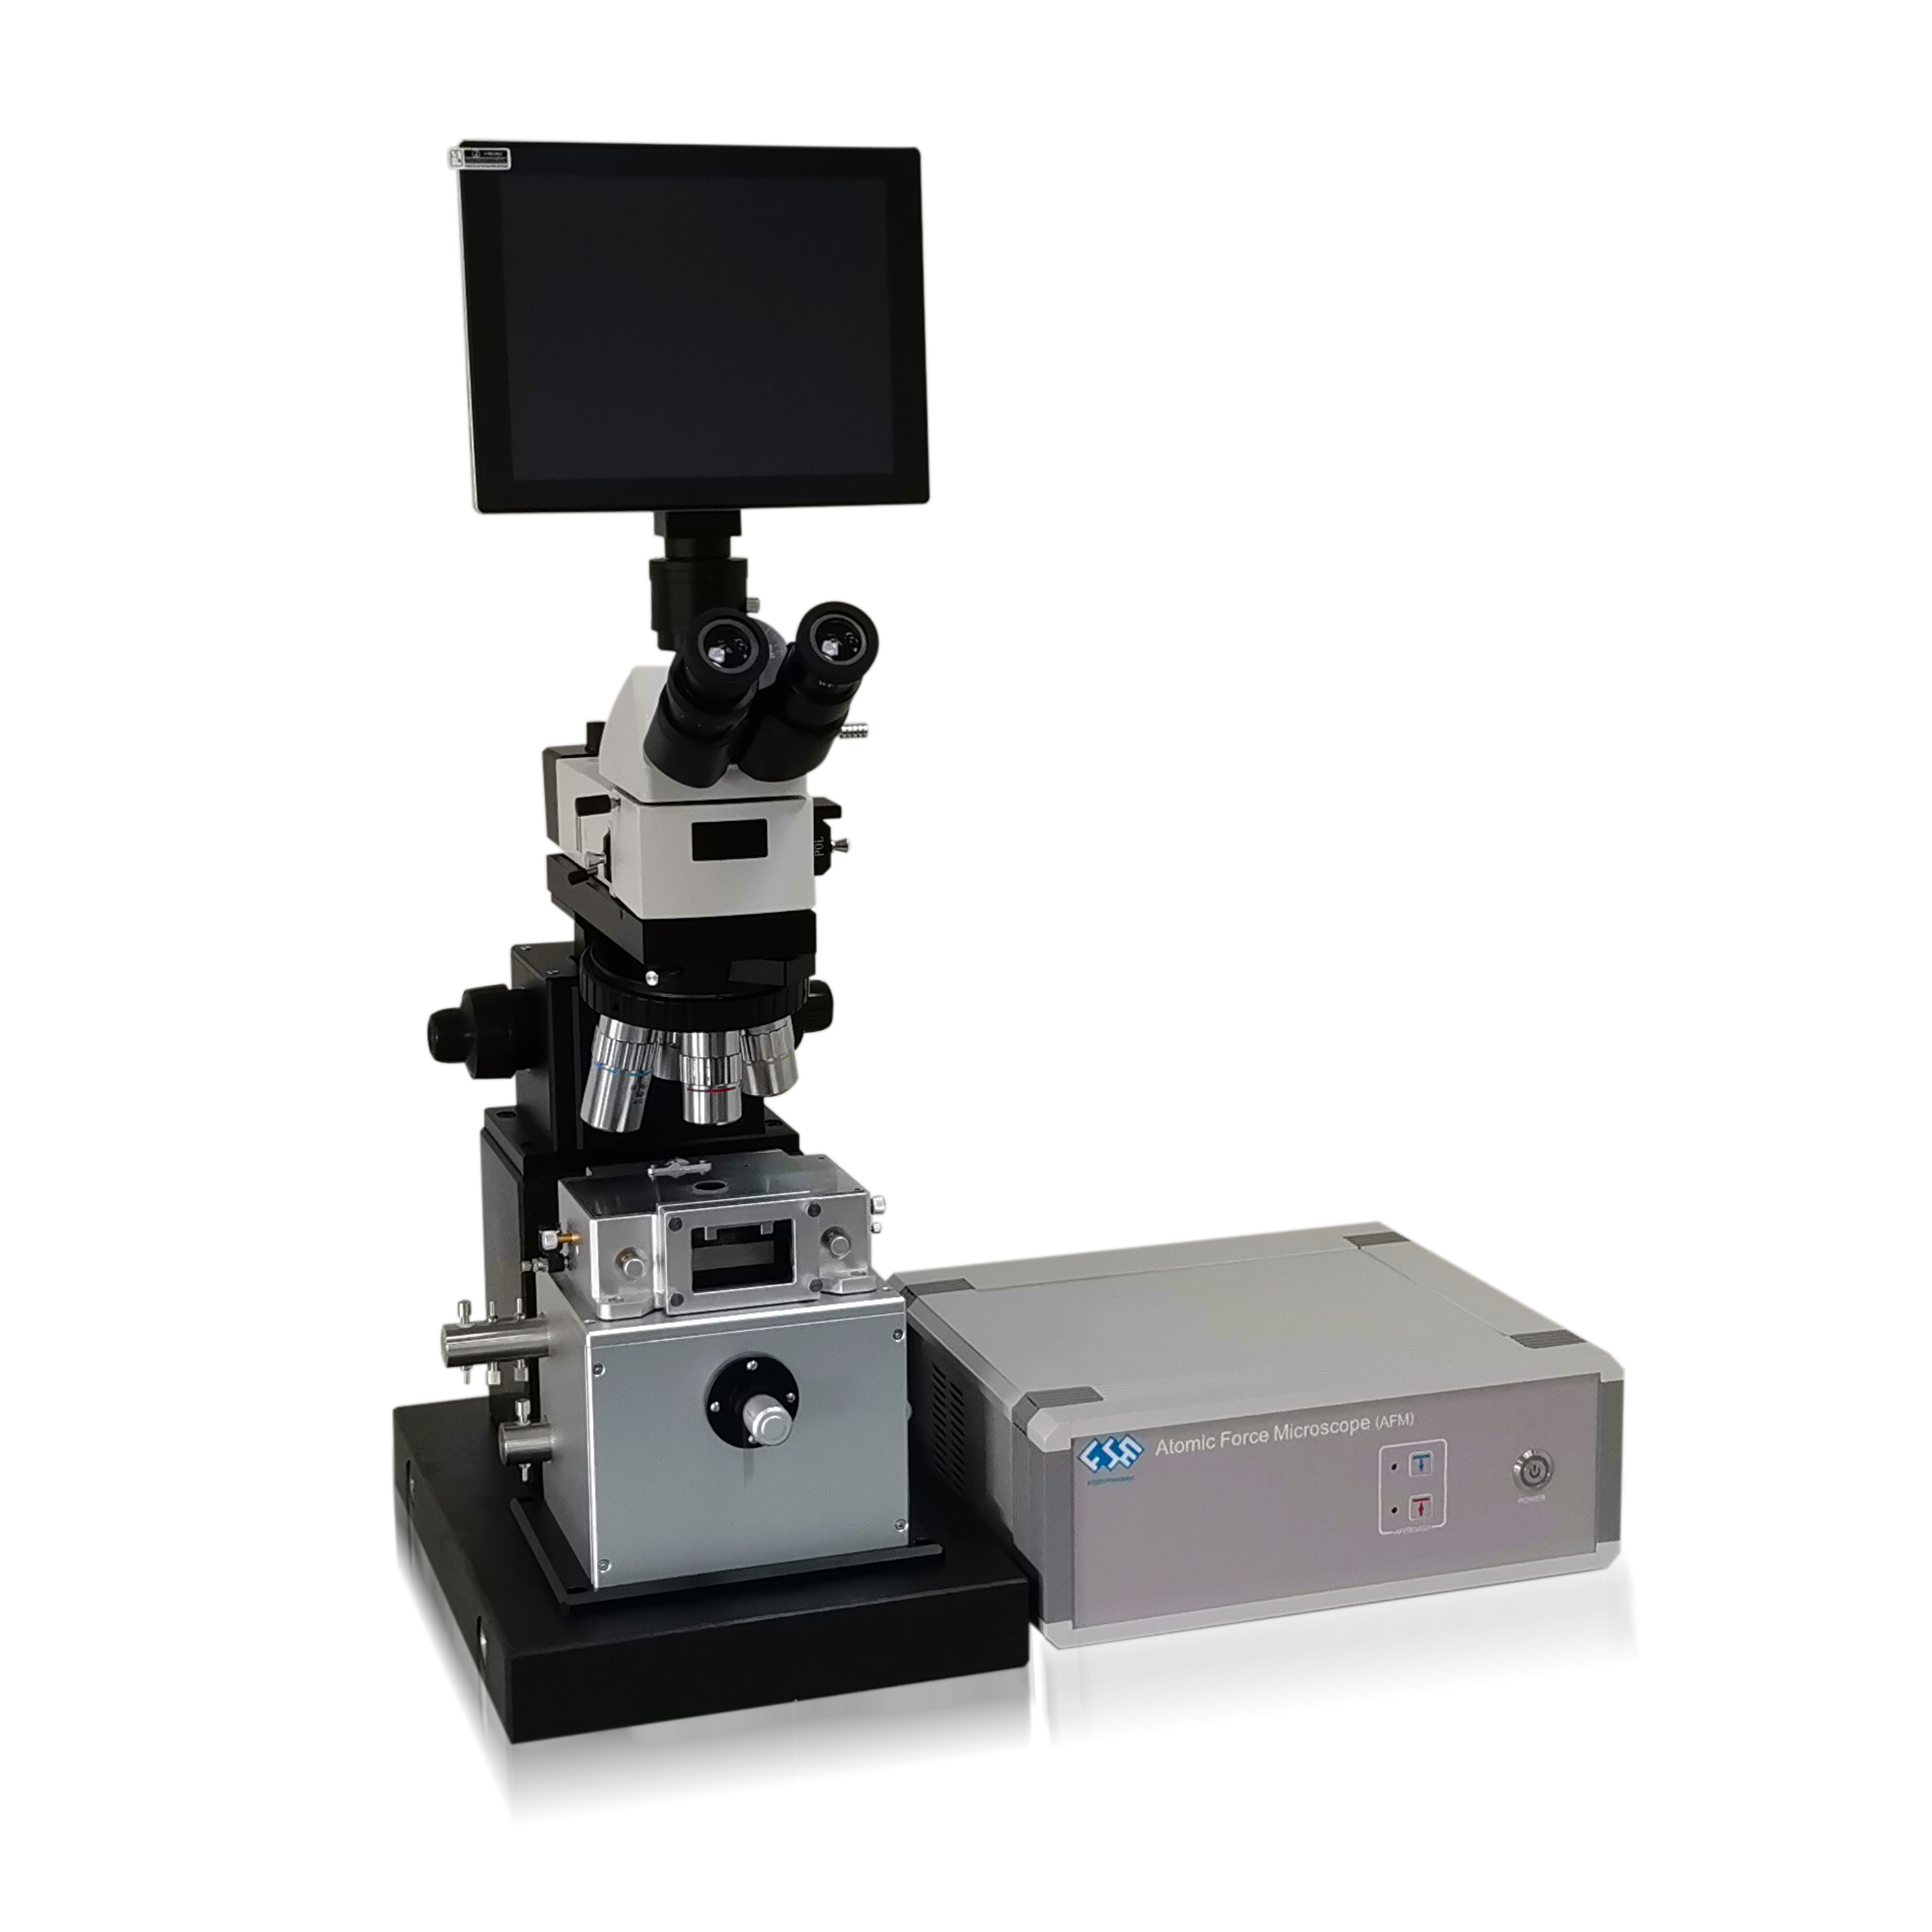 生物显微镜M200-麦克奥迪显微镜安徽总代理_合肥南达科学仪器有限公司